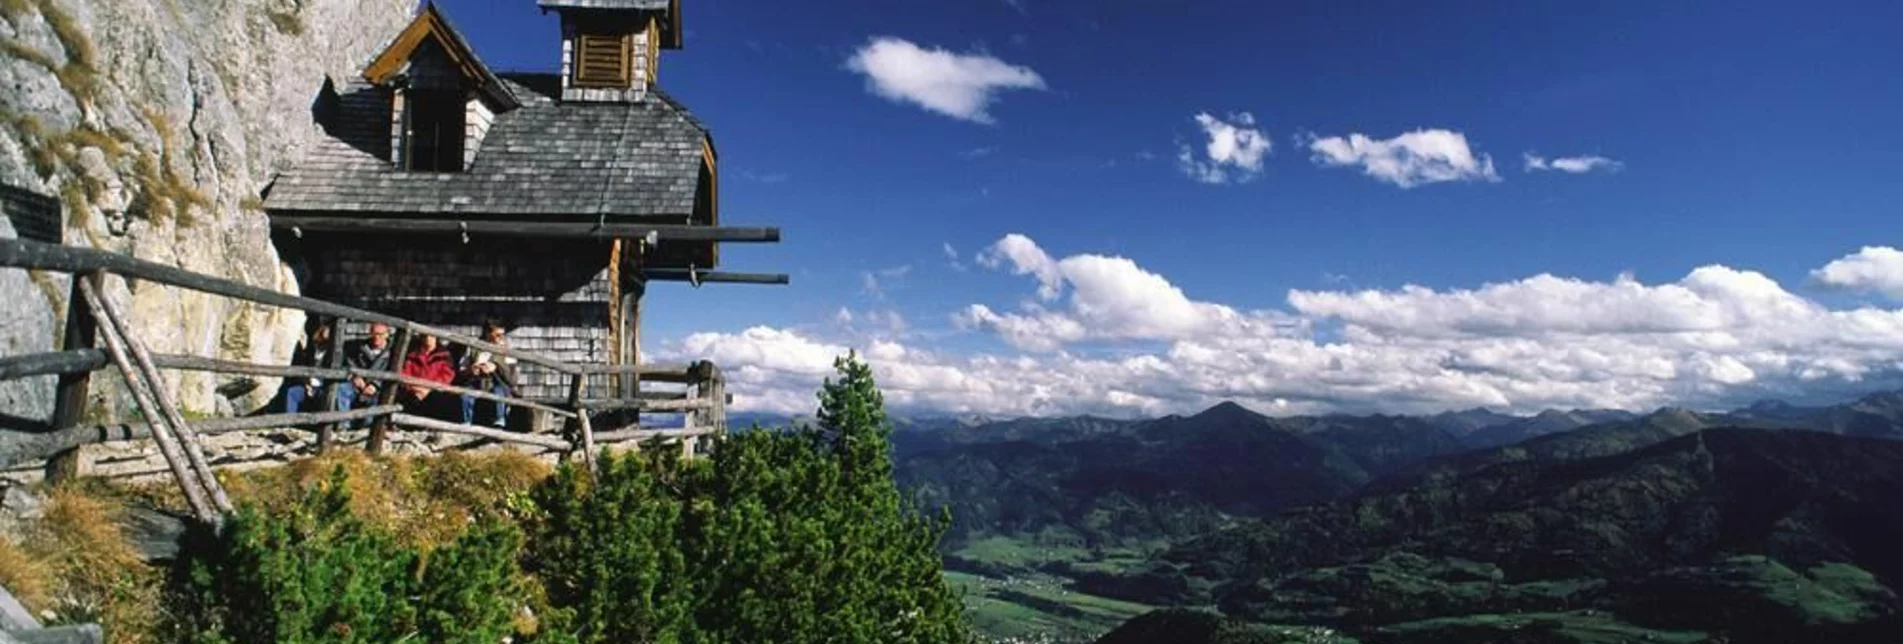 Bergtour Von Assach auf den Stoderzinken - Touren-Impression #1 | © Erlebnisregion Schladming-Dachstein